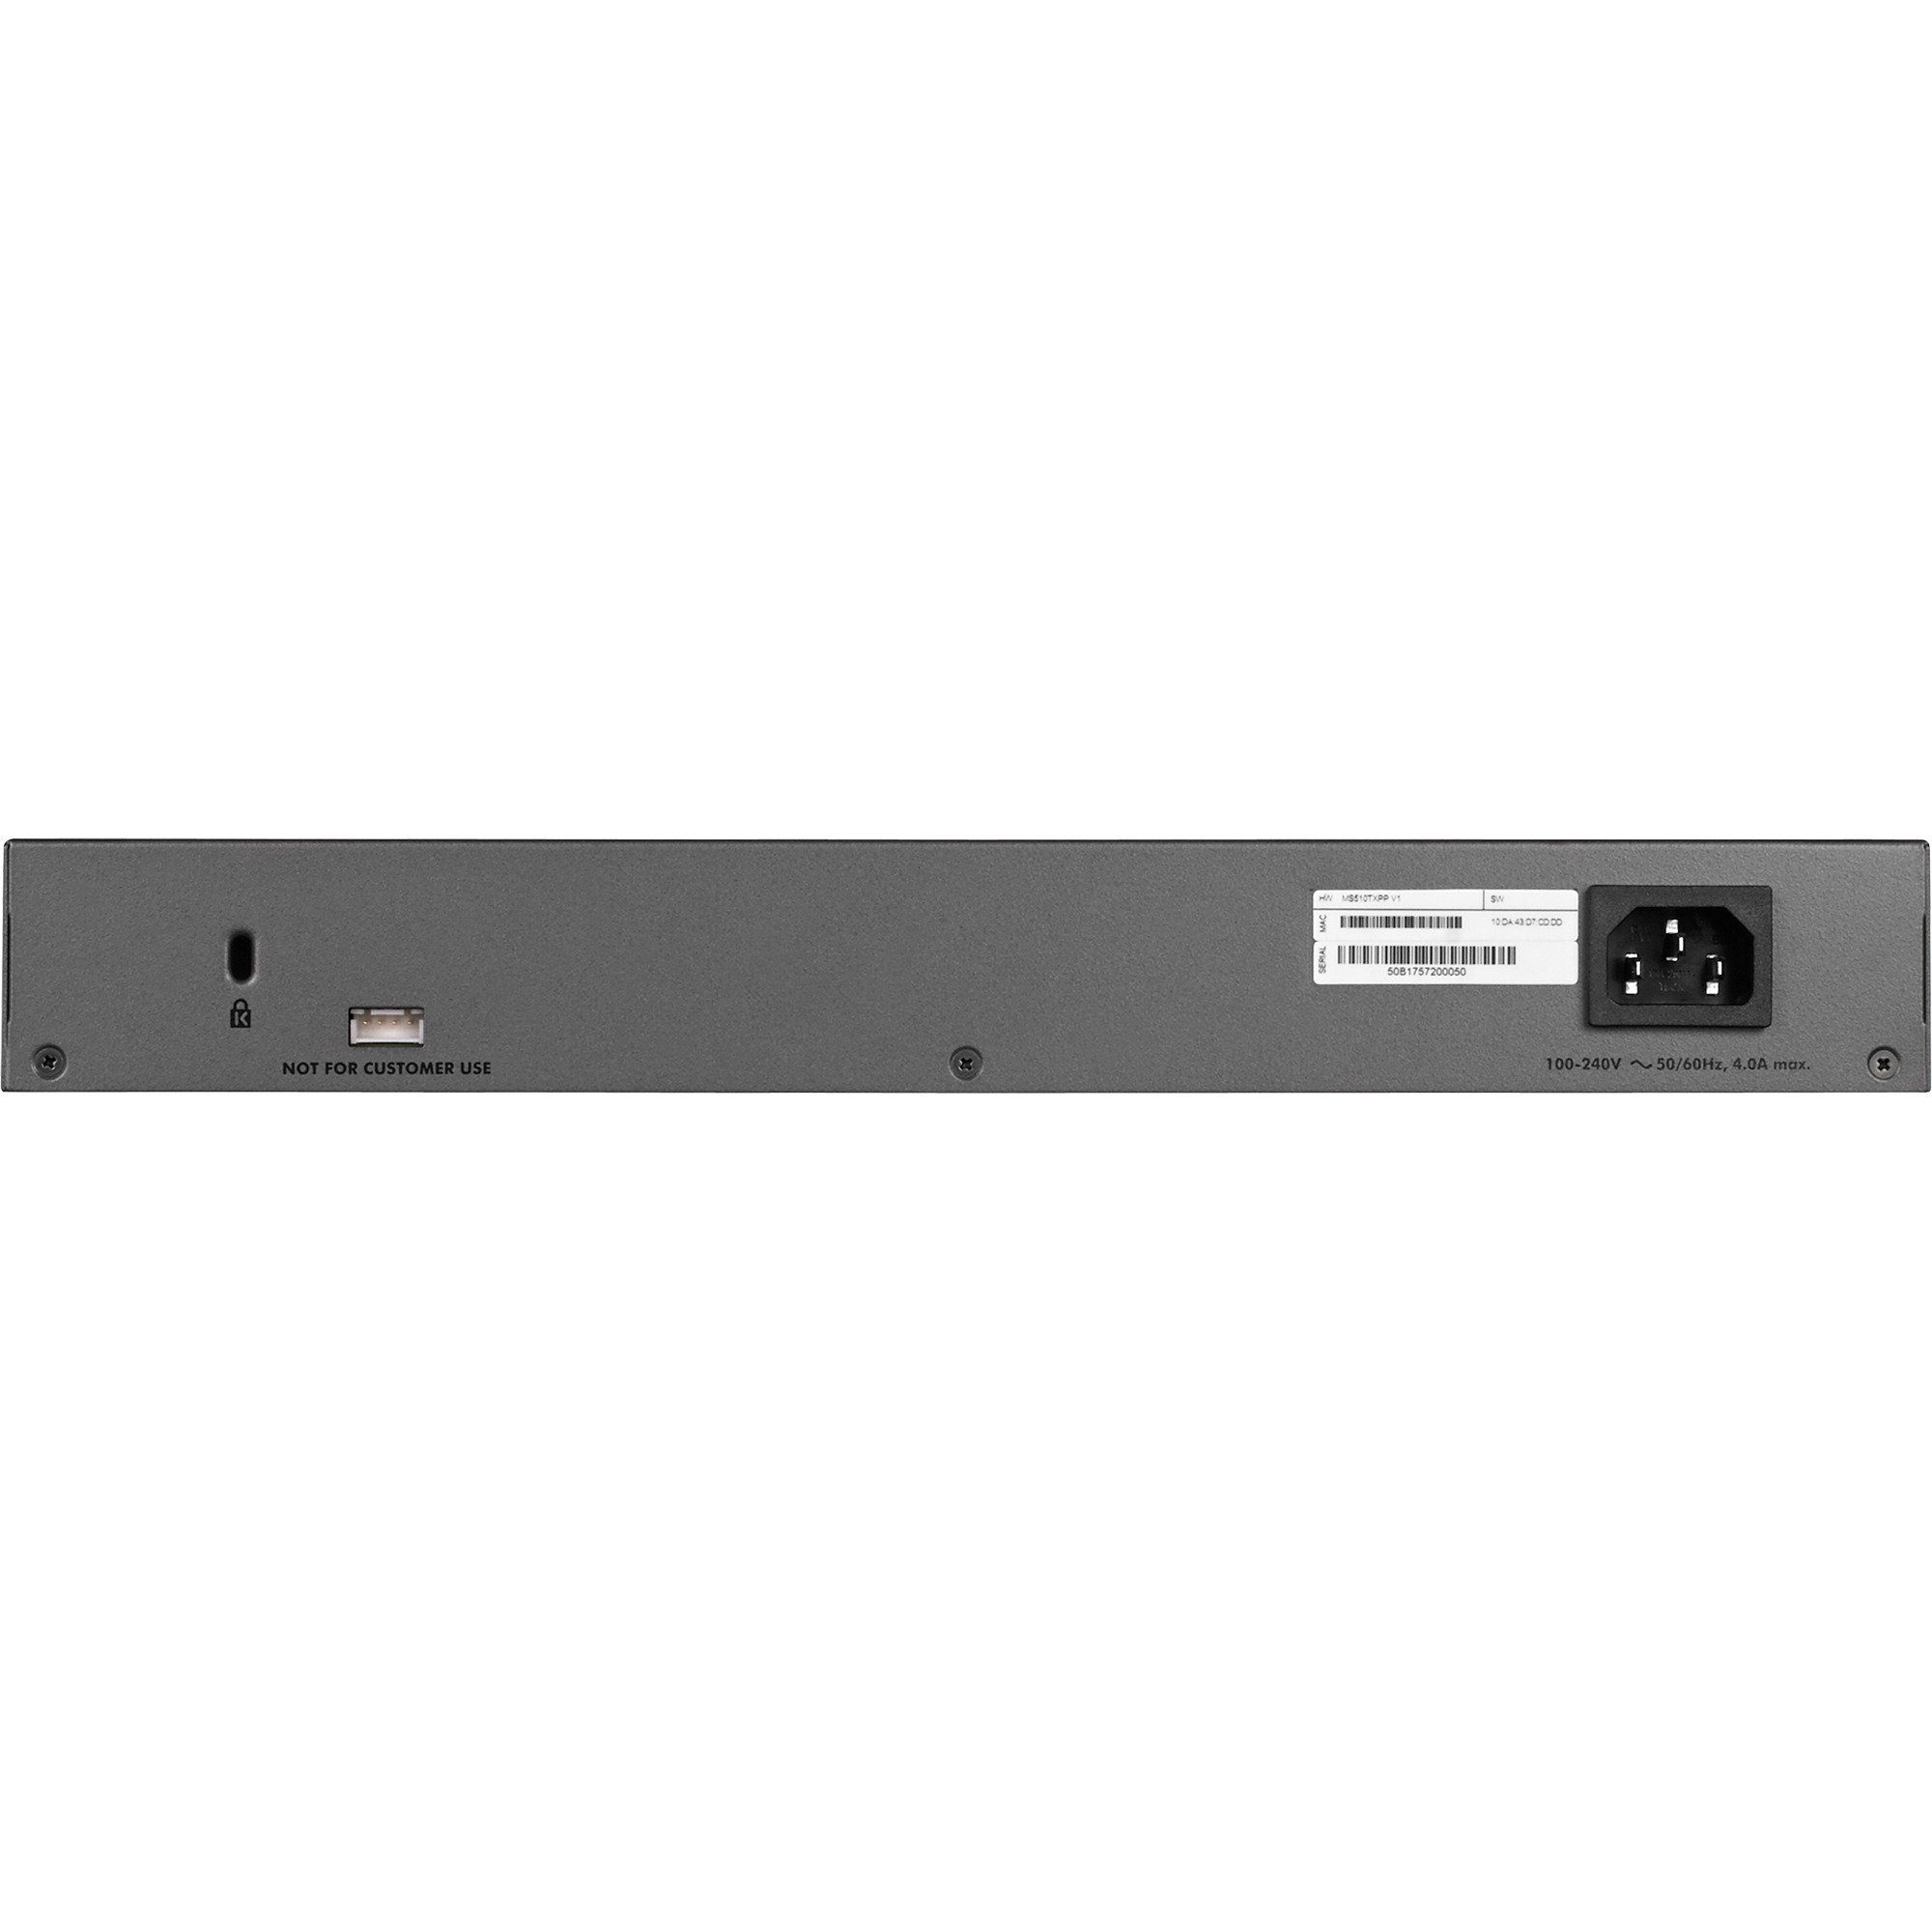 Netzwerk-Switch NETGEAR SFP+, Netgear (Multi-Gigabit, Switch, MS510TXPP,